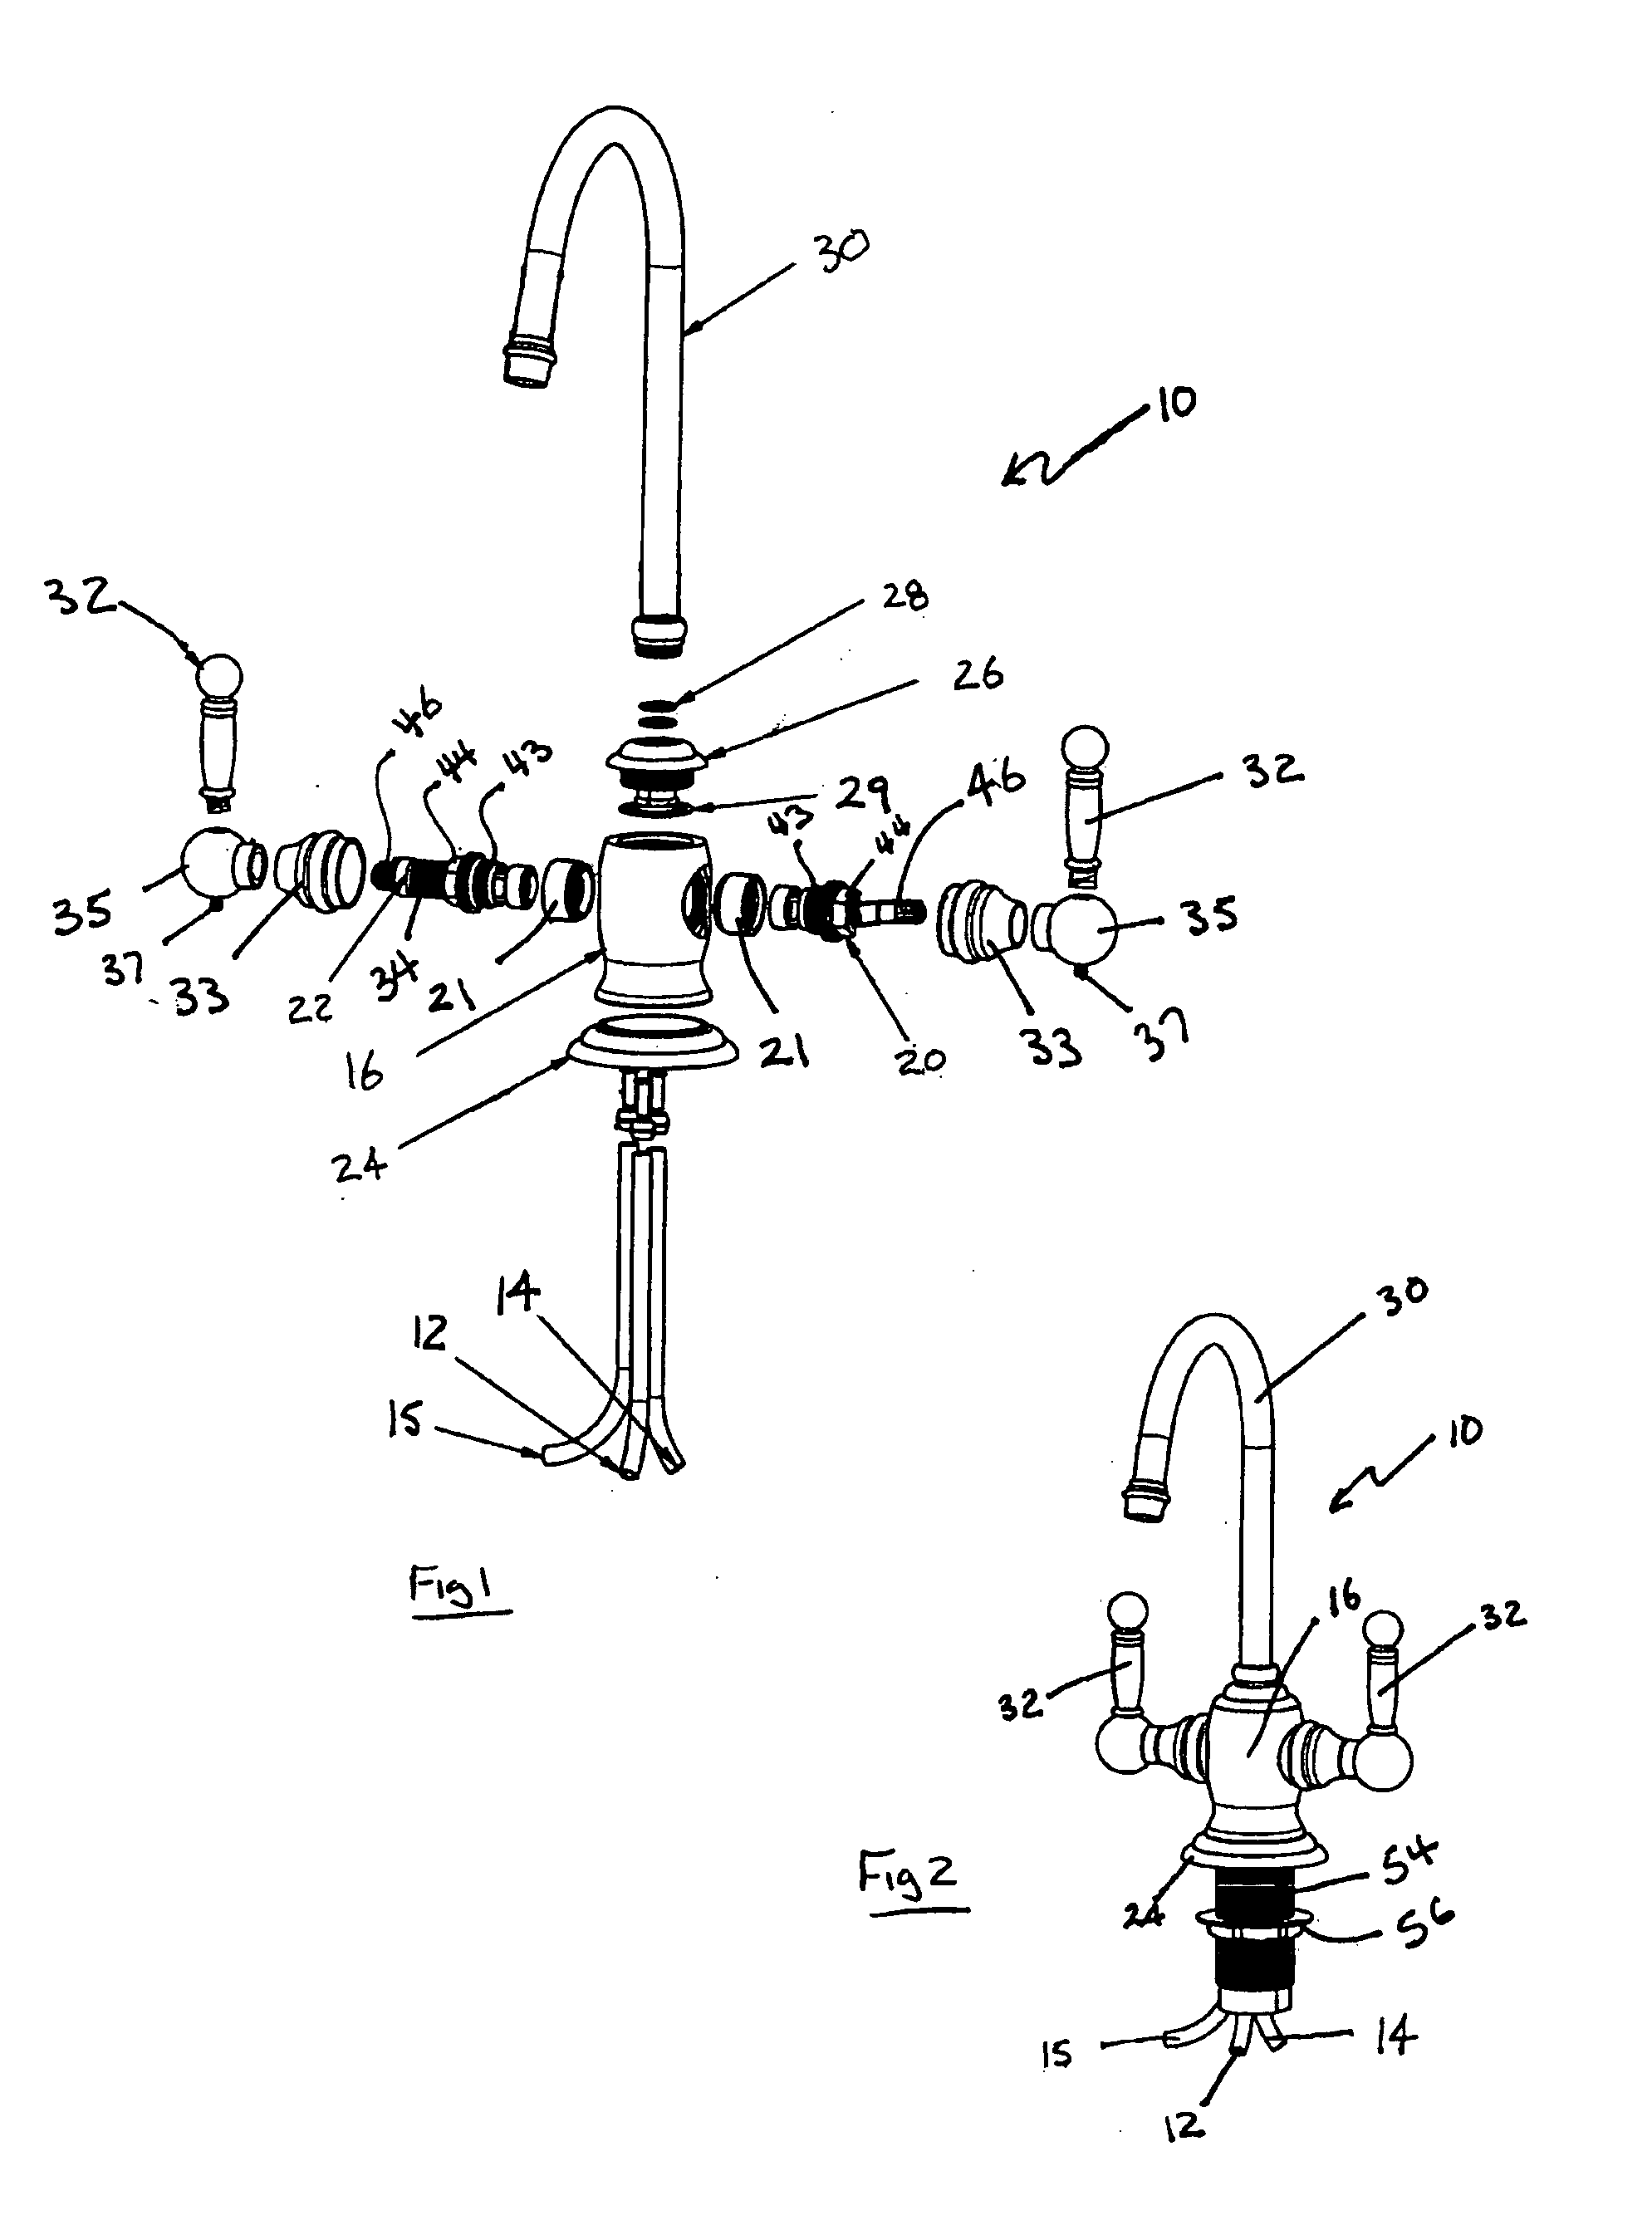 Self-closing rotary valve